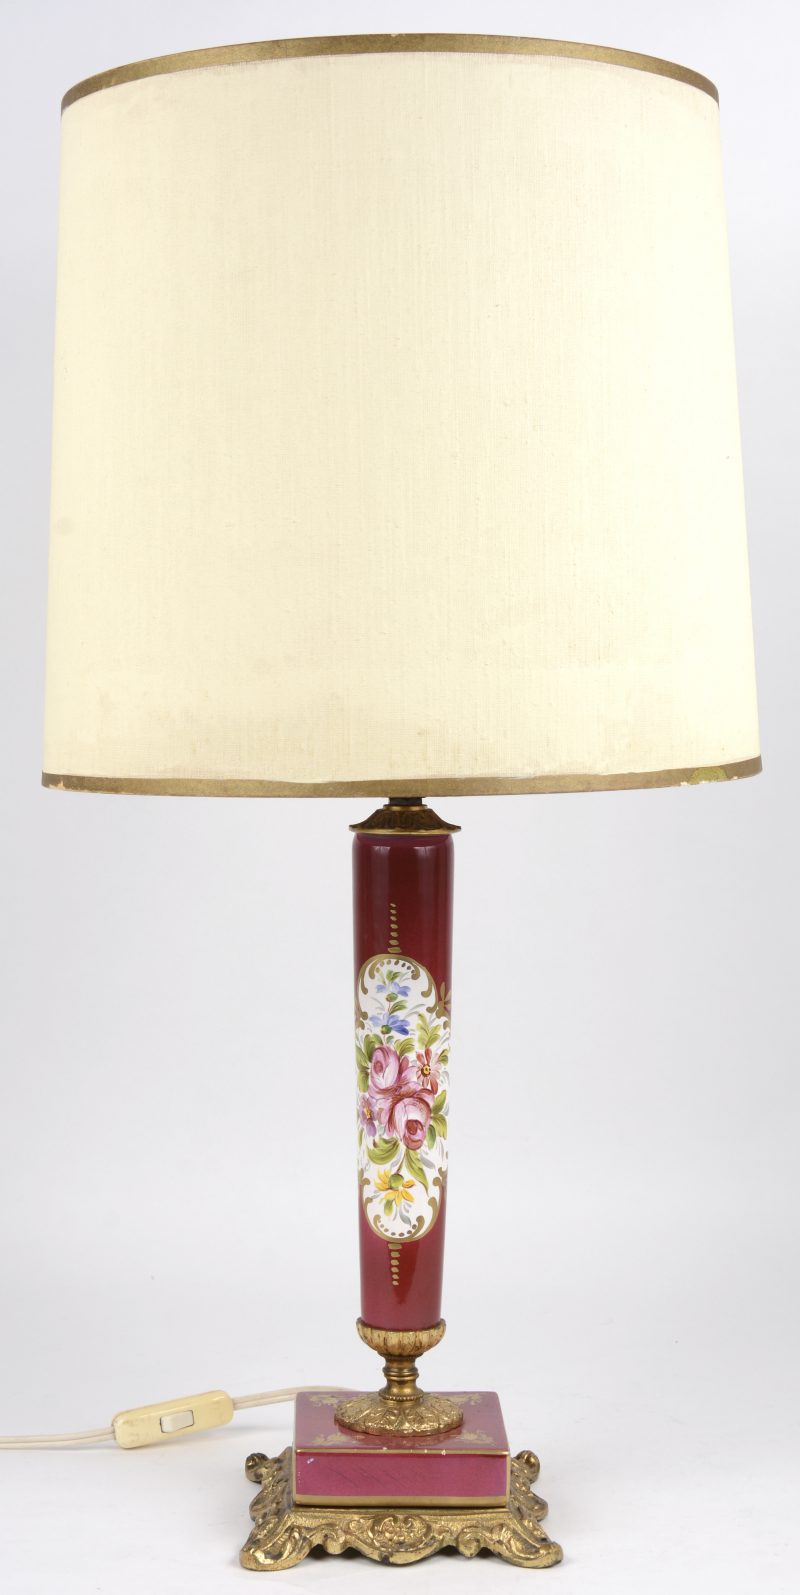 Een porseleinen lampvoet met een meerkleurig bloemendecor in met goud omzoomde cartouche op rode fond en met verguld bronzen voet. Kleine schilfers aan de basis.